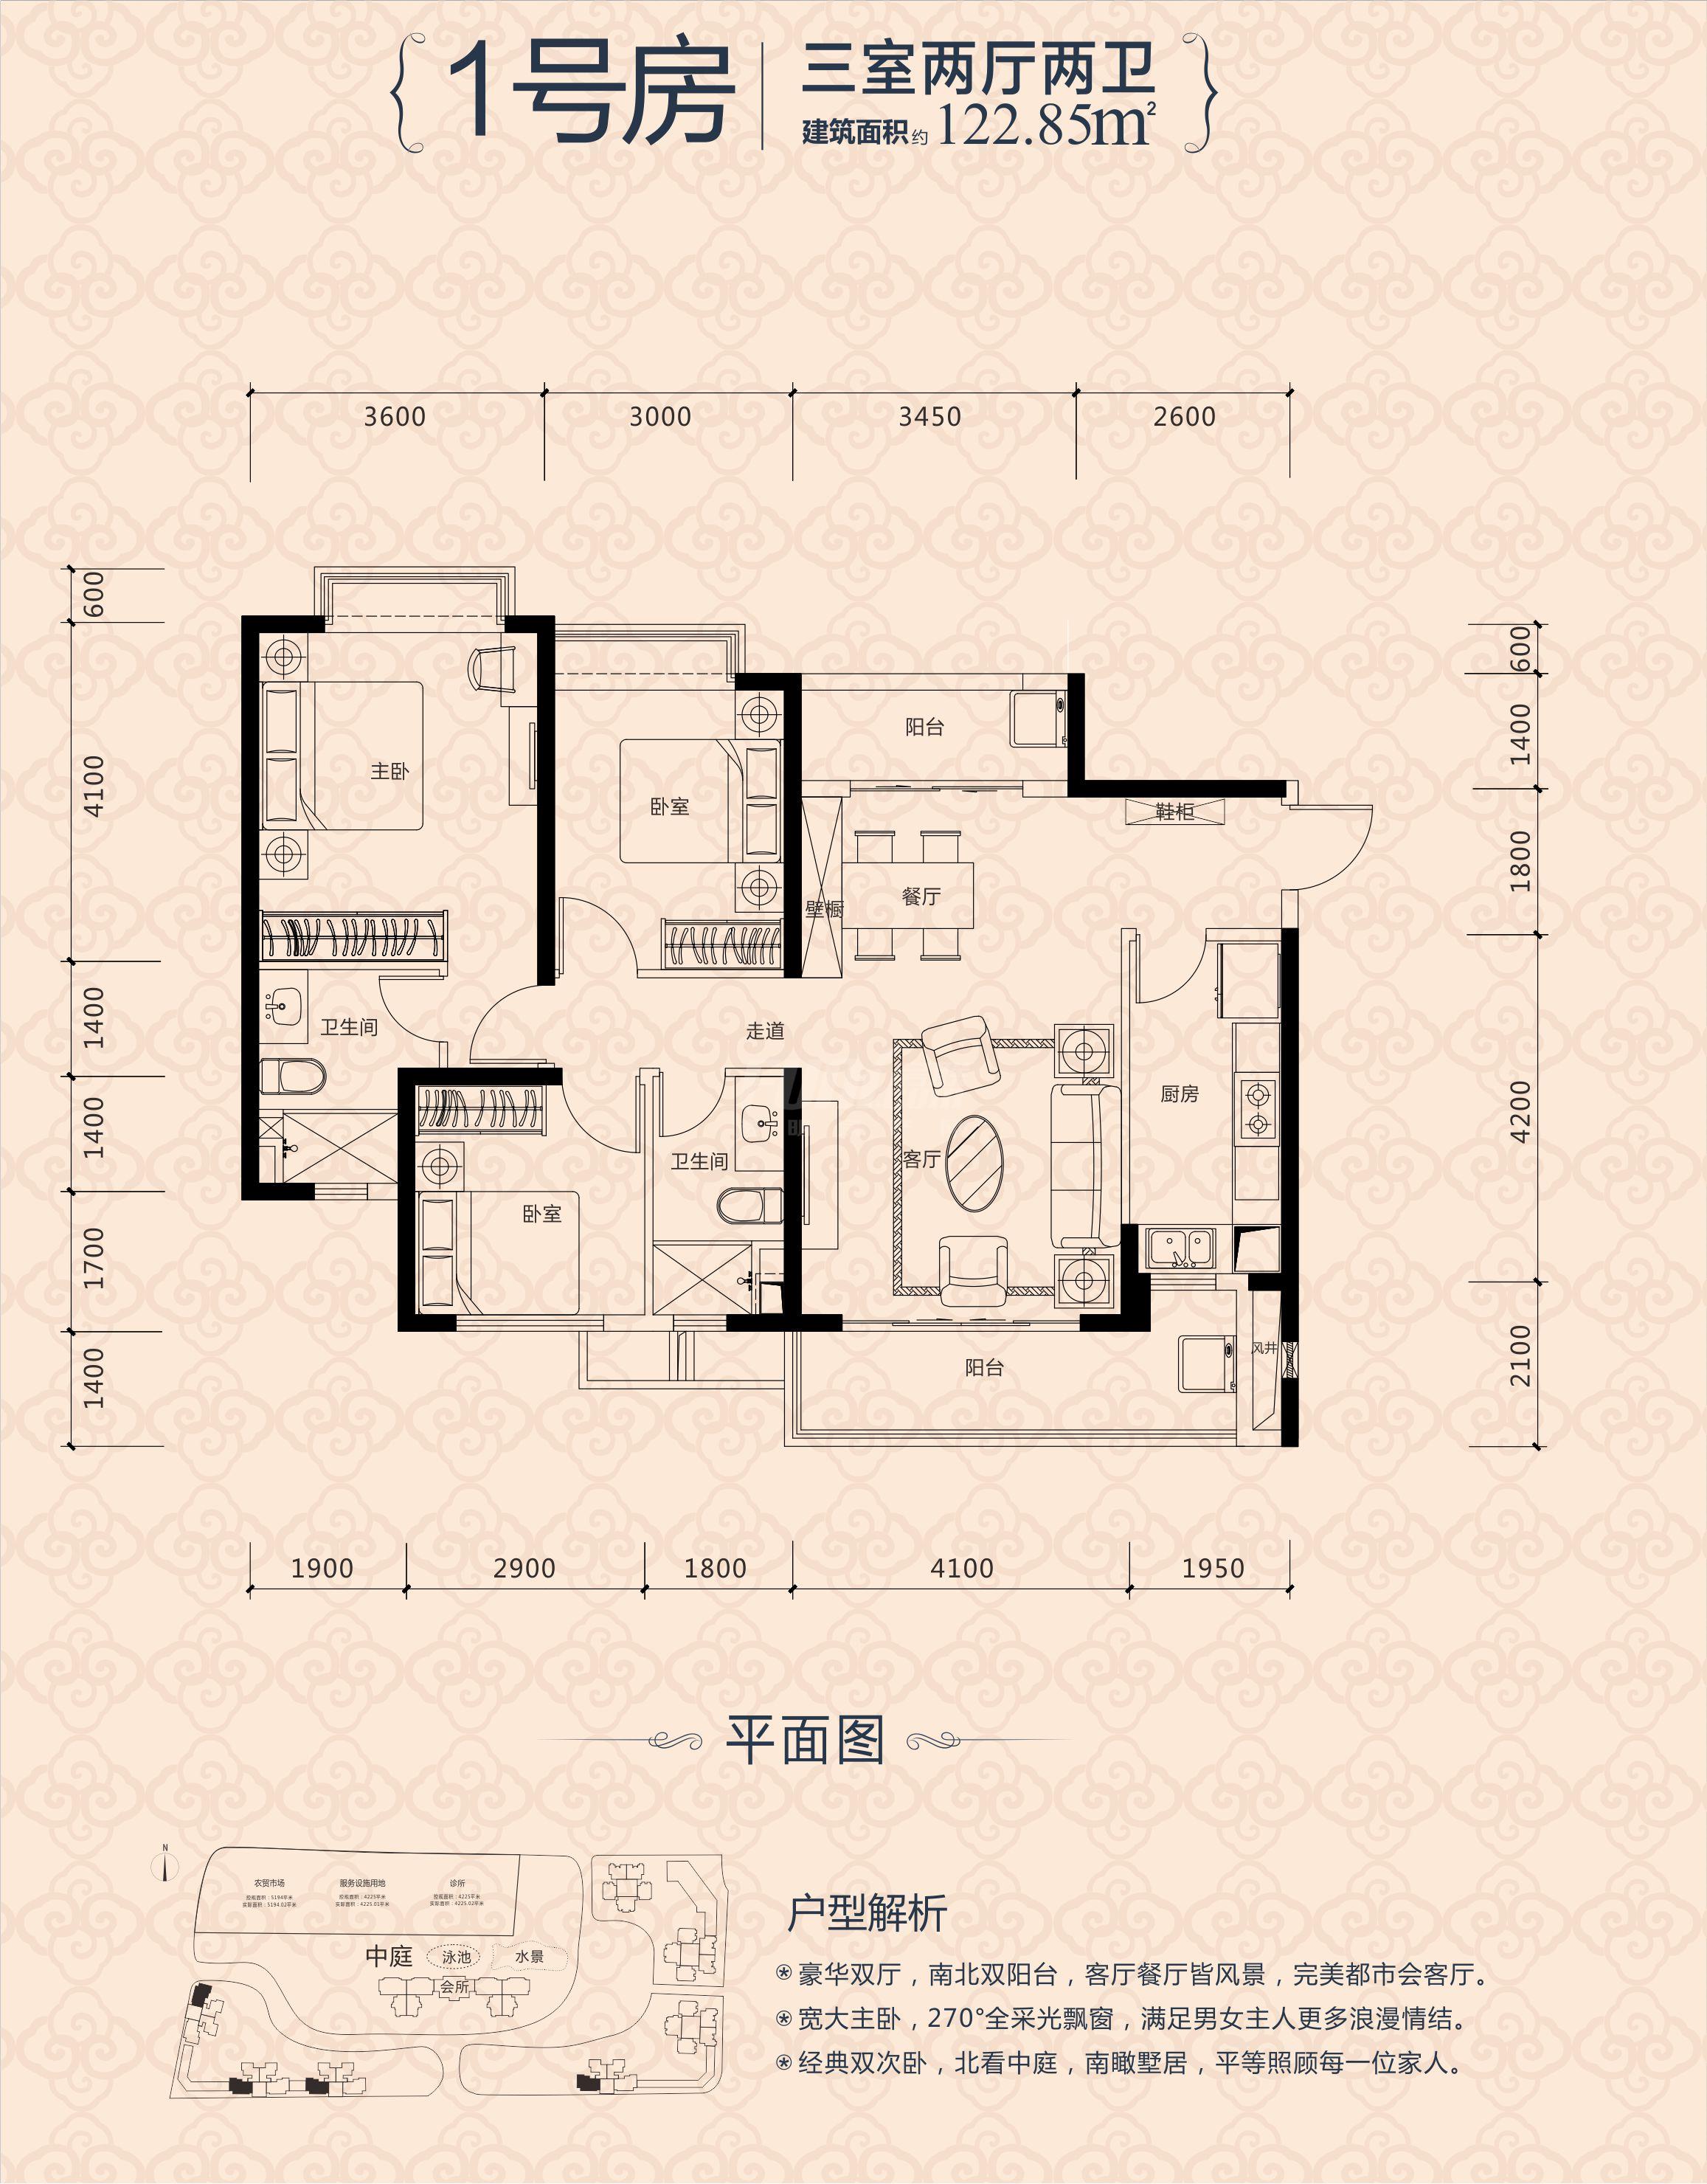 恒大锦城1期2栋1号房户型图,3室2厅2卫122.85平米 成都透明房产网